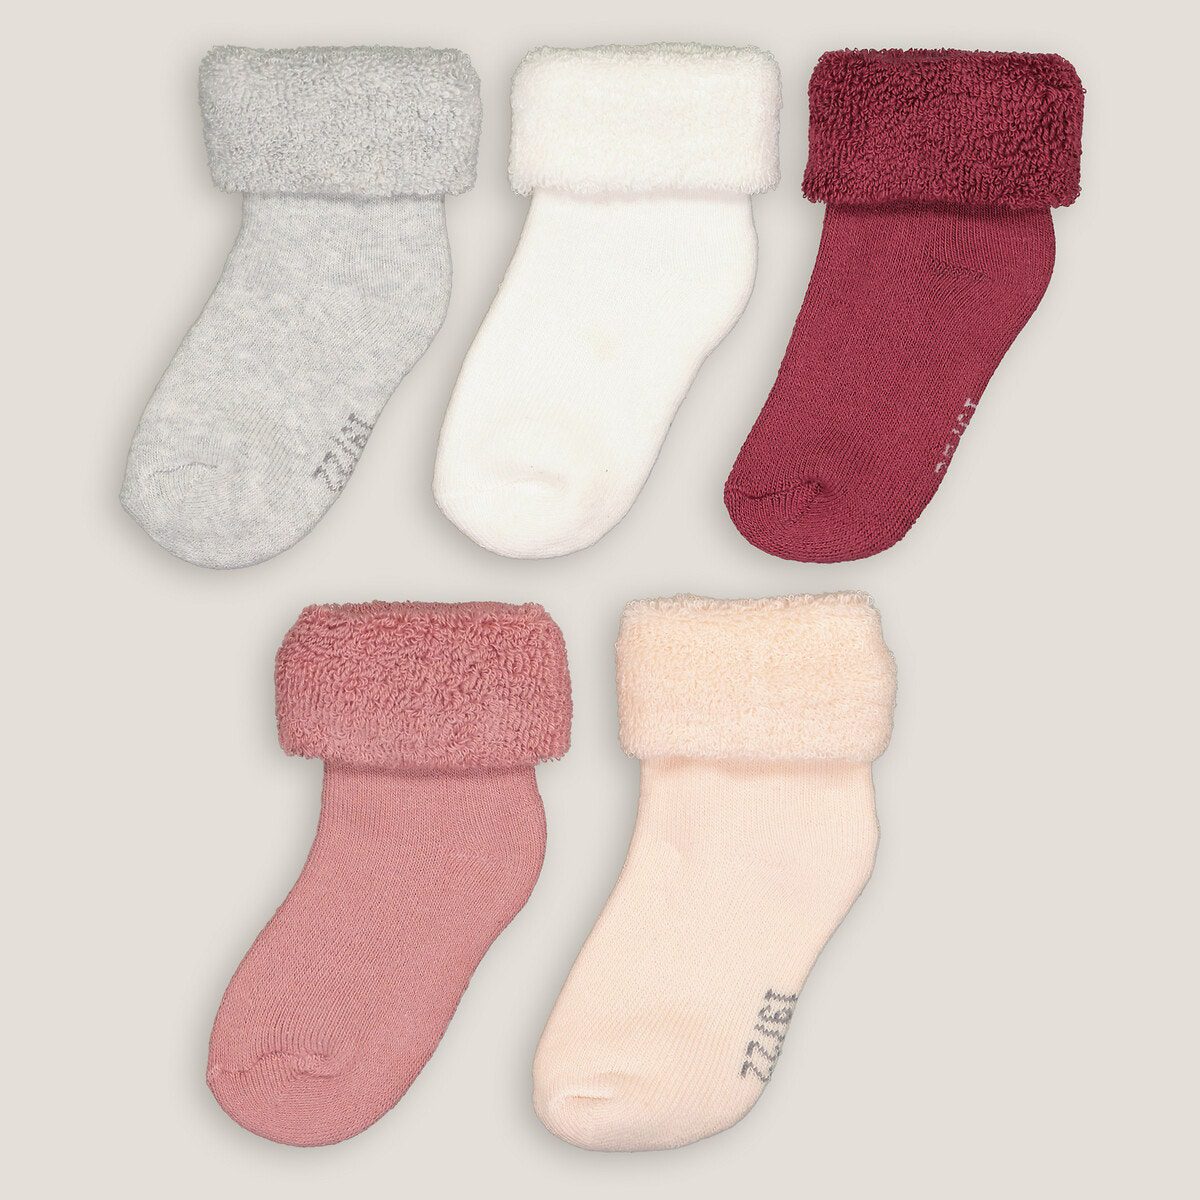 Σετ 5 ζευγάρια κάλτσες Διαφορα Χρωματα